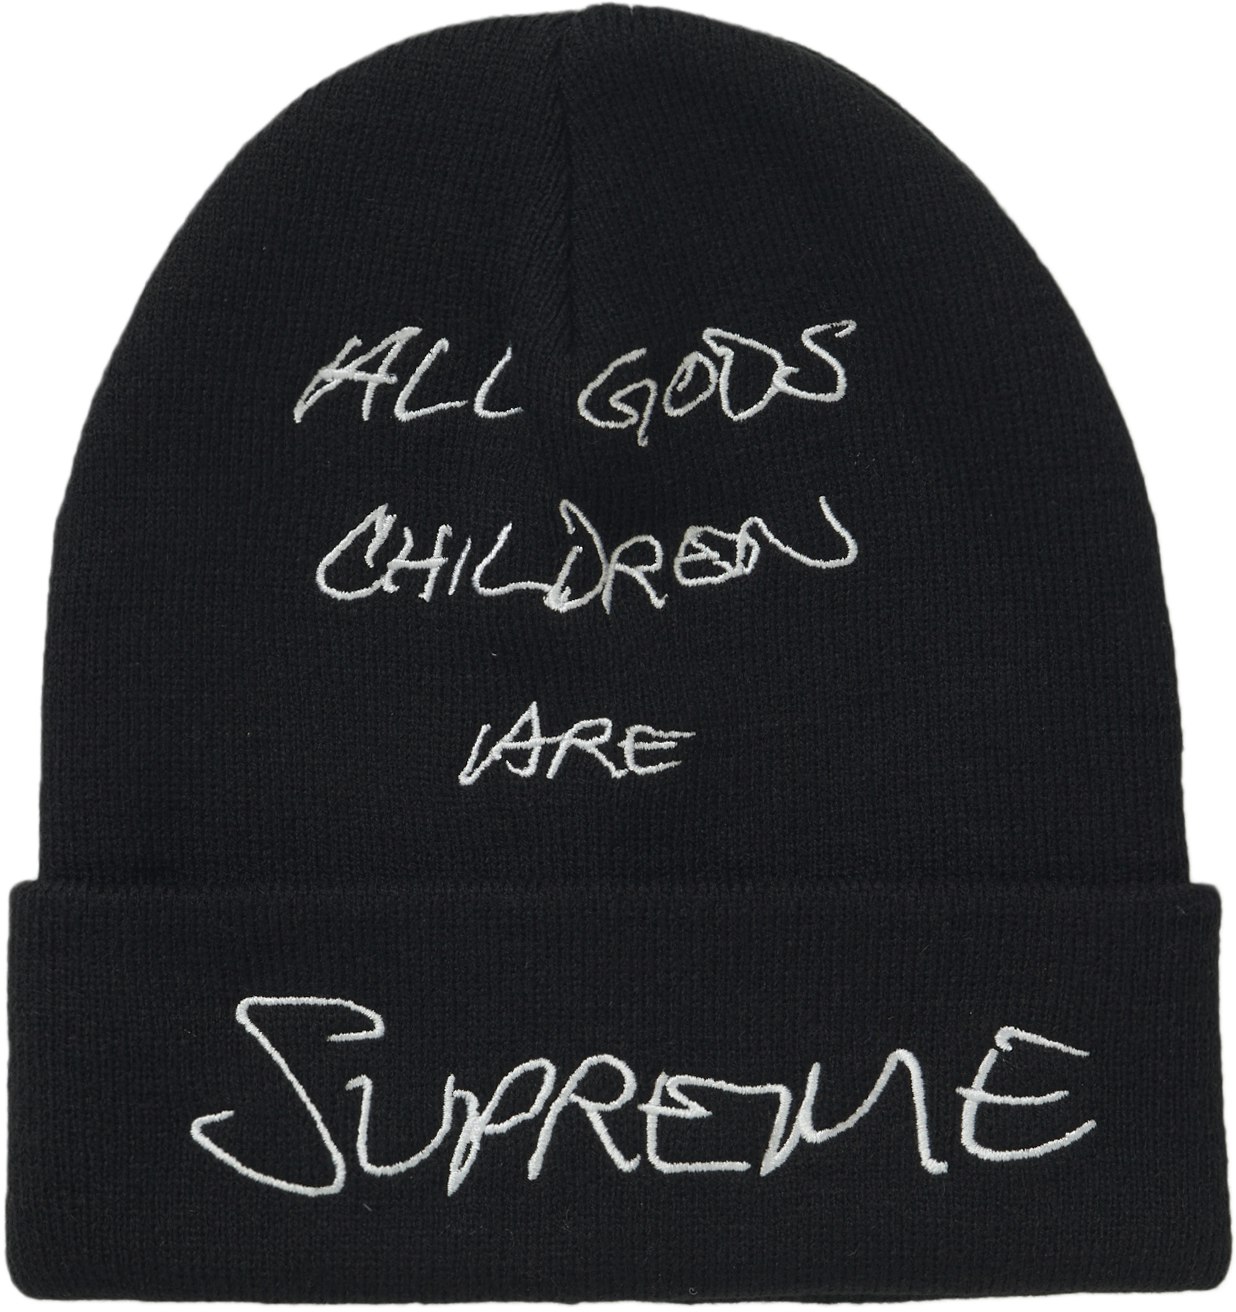 Supreme x God's Children Beanie 'Black'